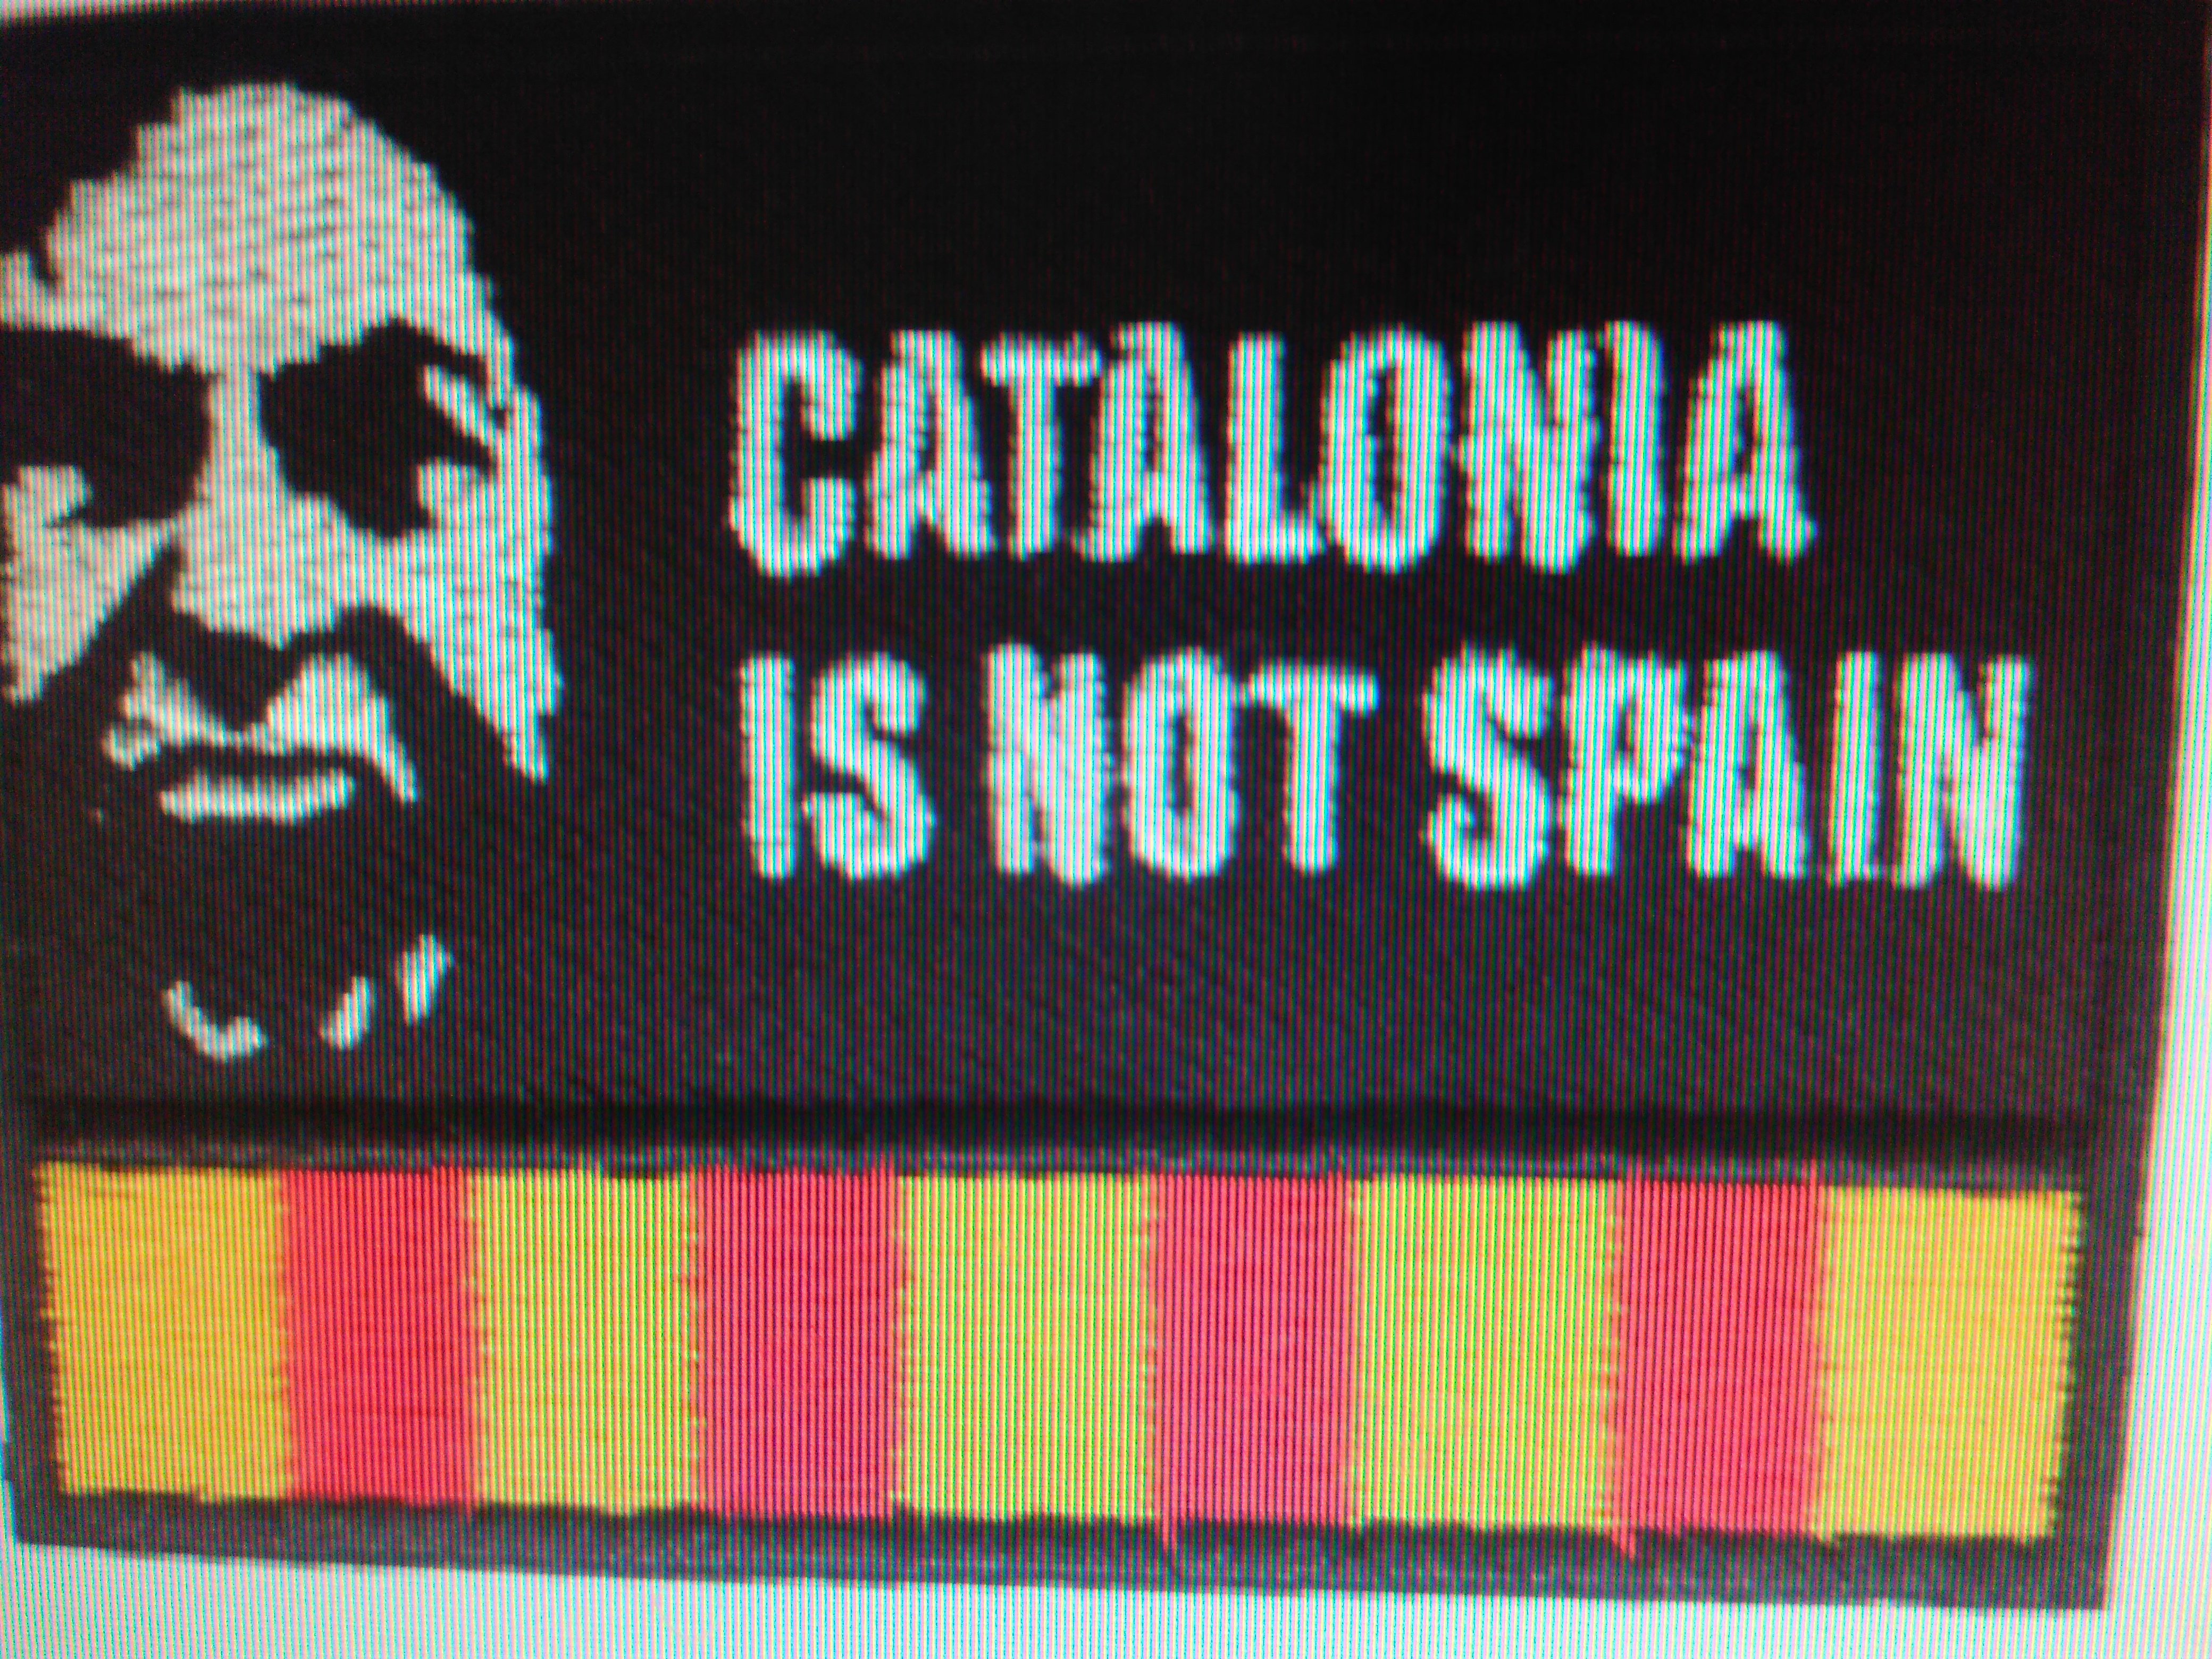 ESCUT  BRODAT CATALONIA IS NOT SPAIN